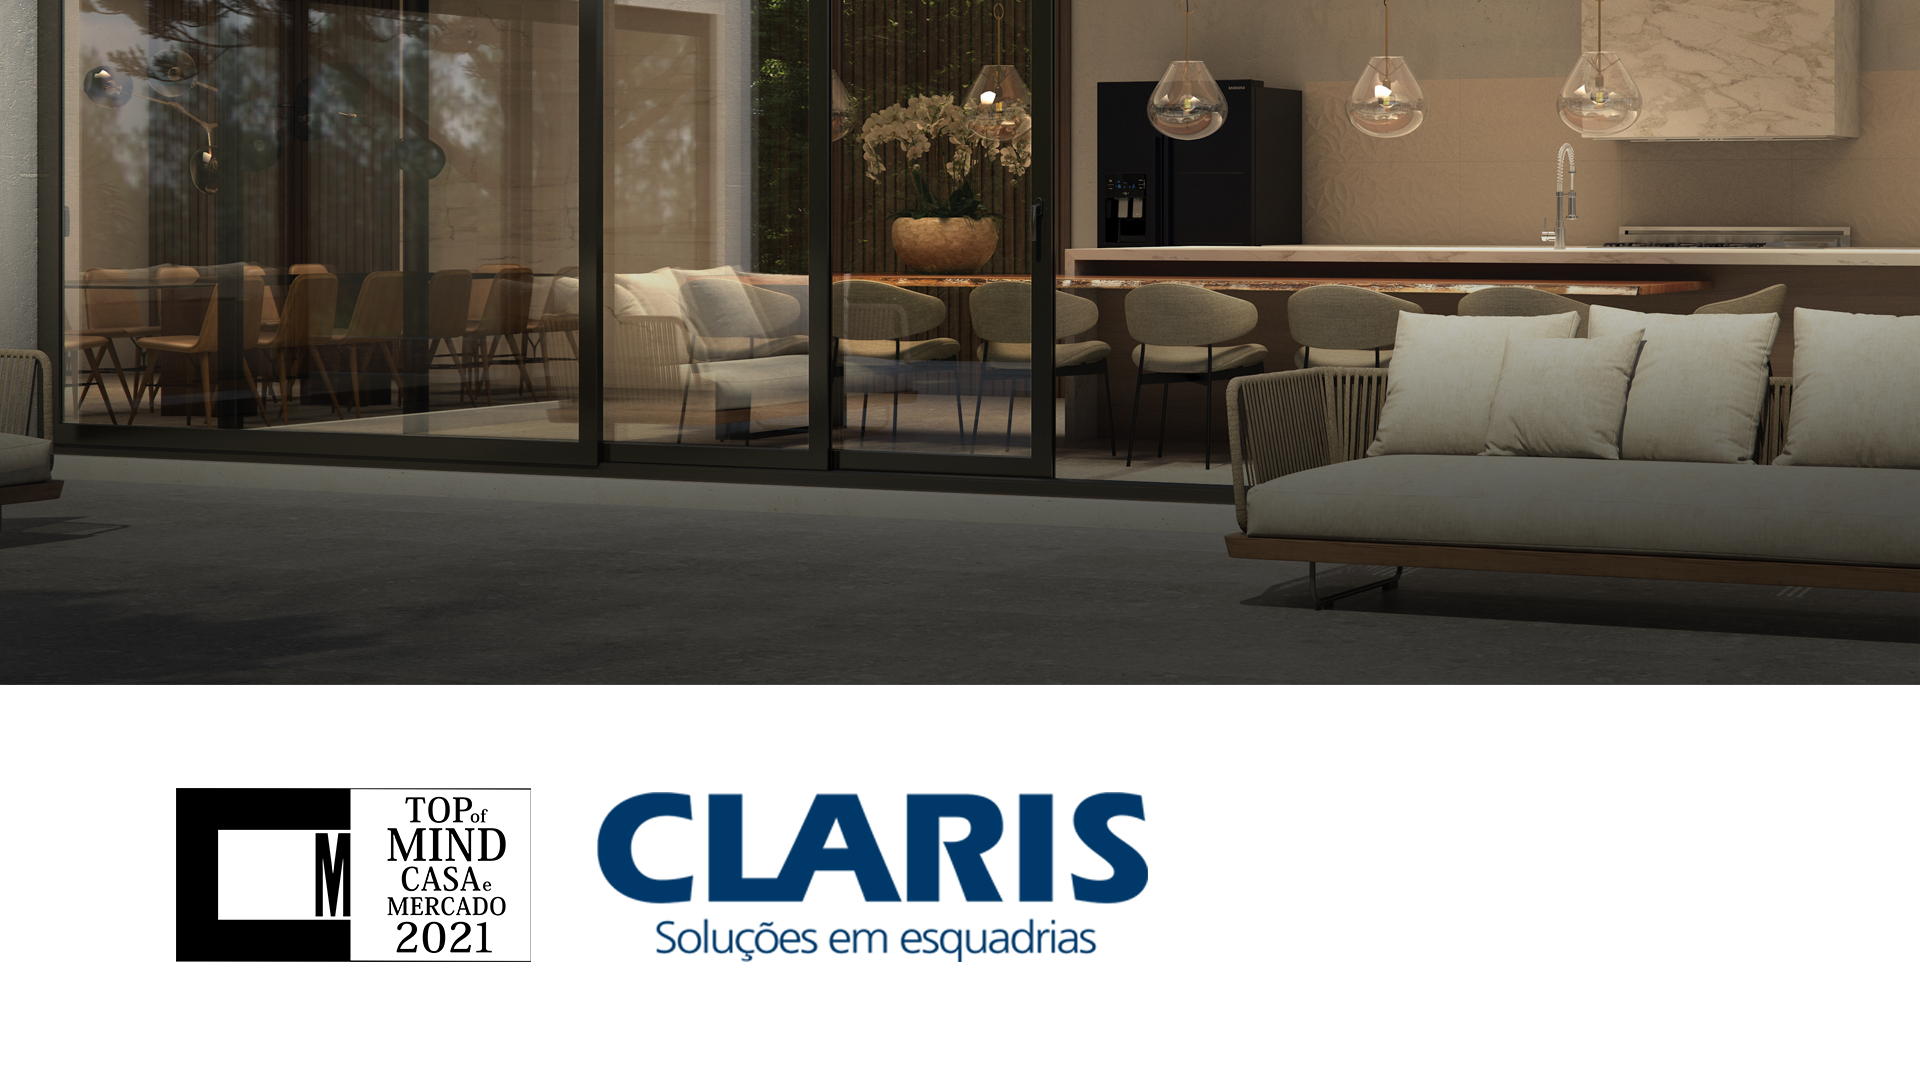 Thumbnail: Claris é TOP OF MIND Casa e Mercado pela 17ª vez